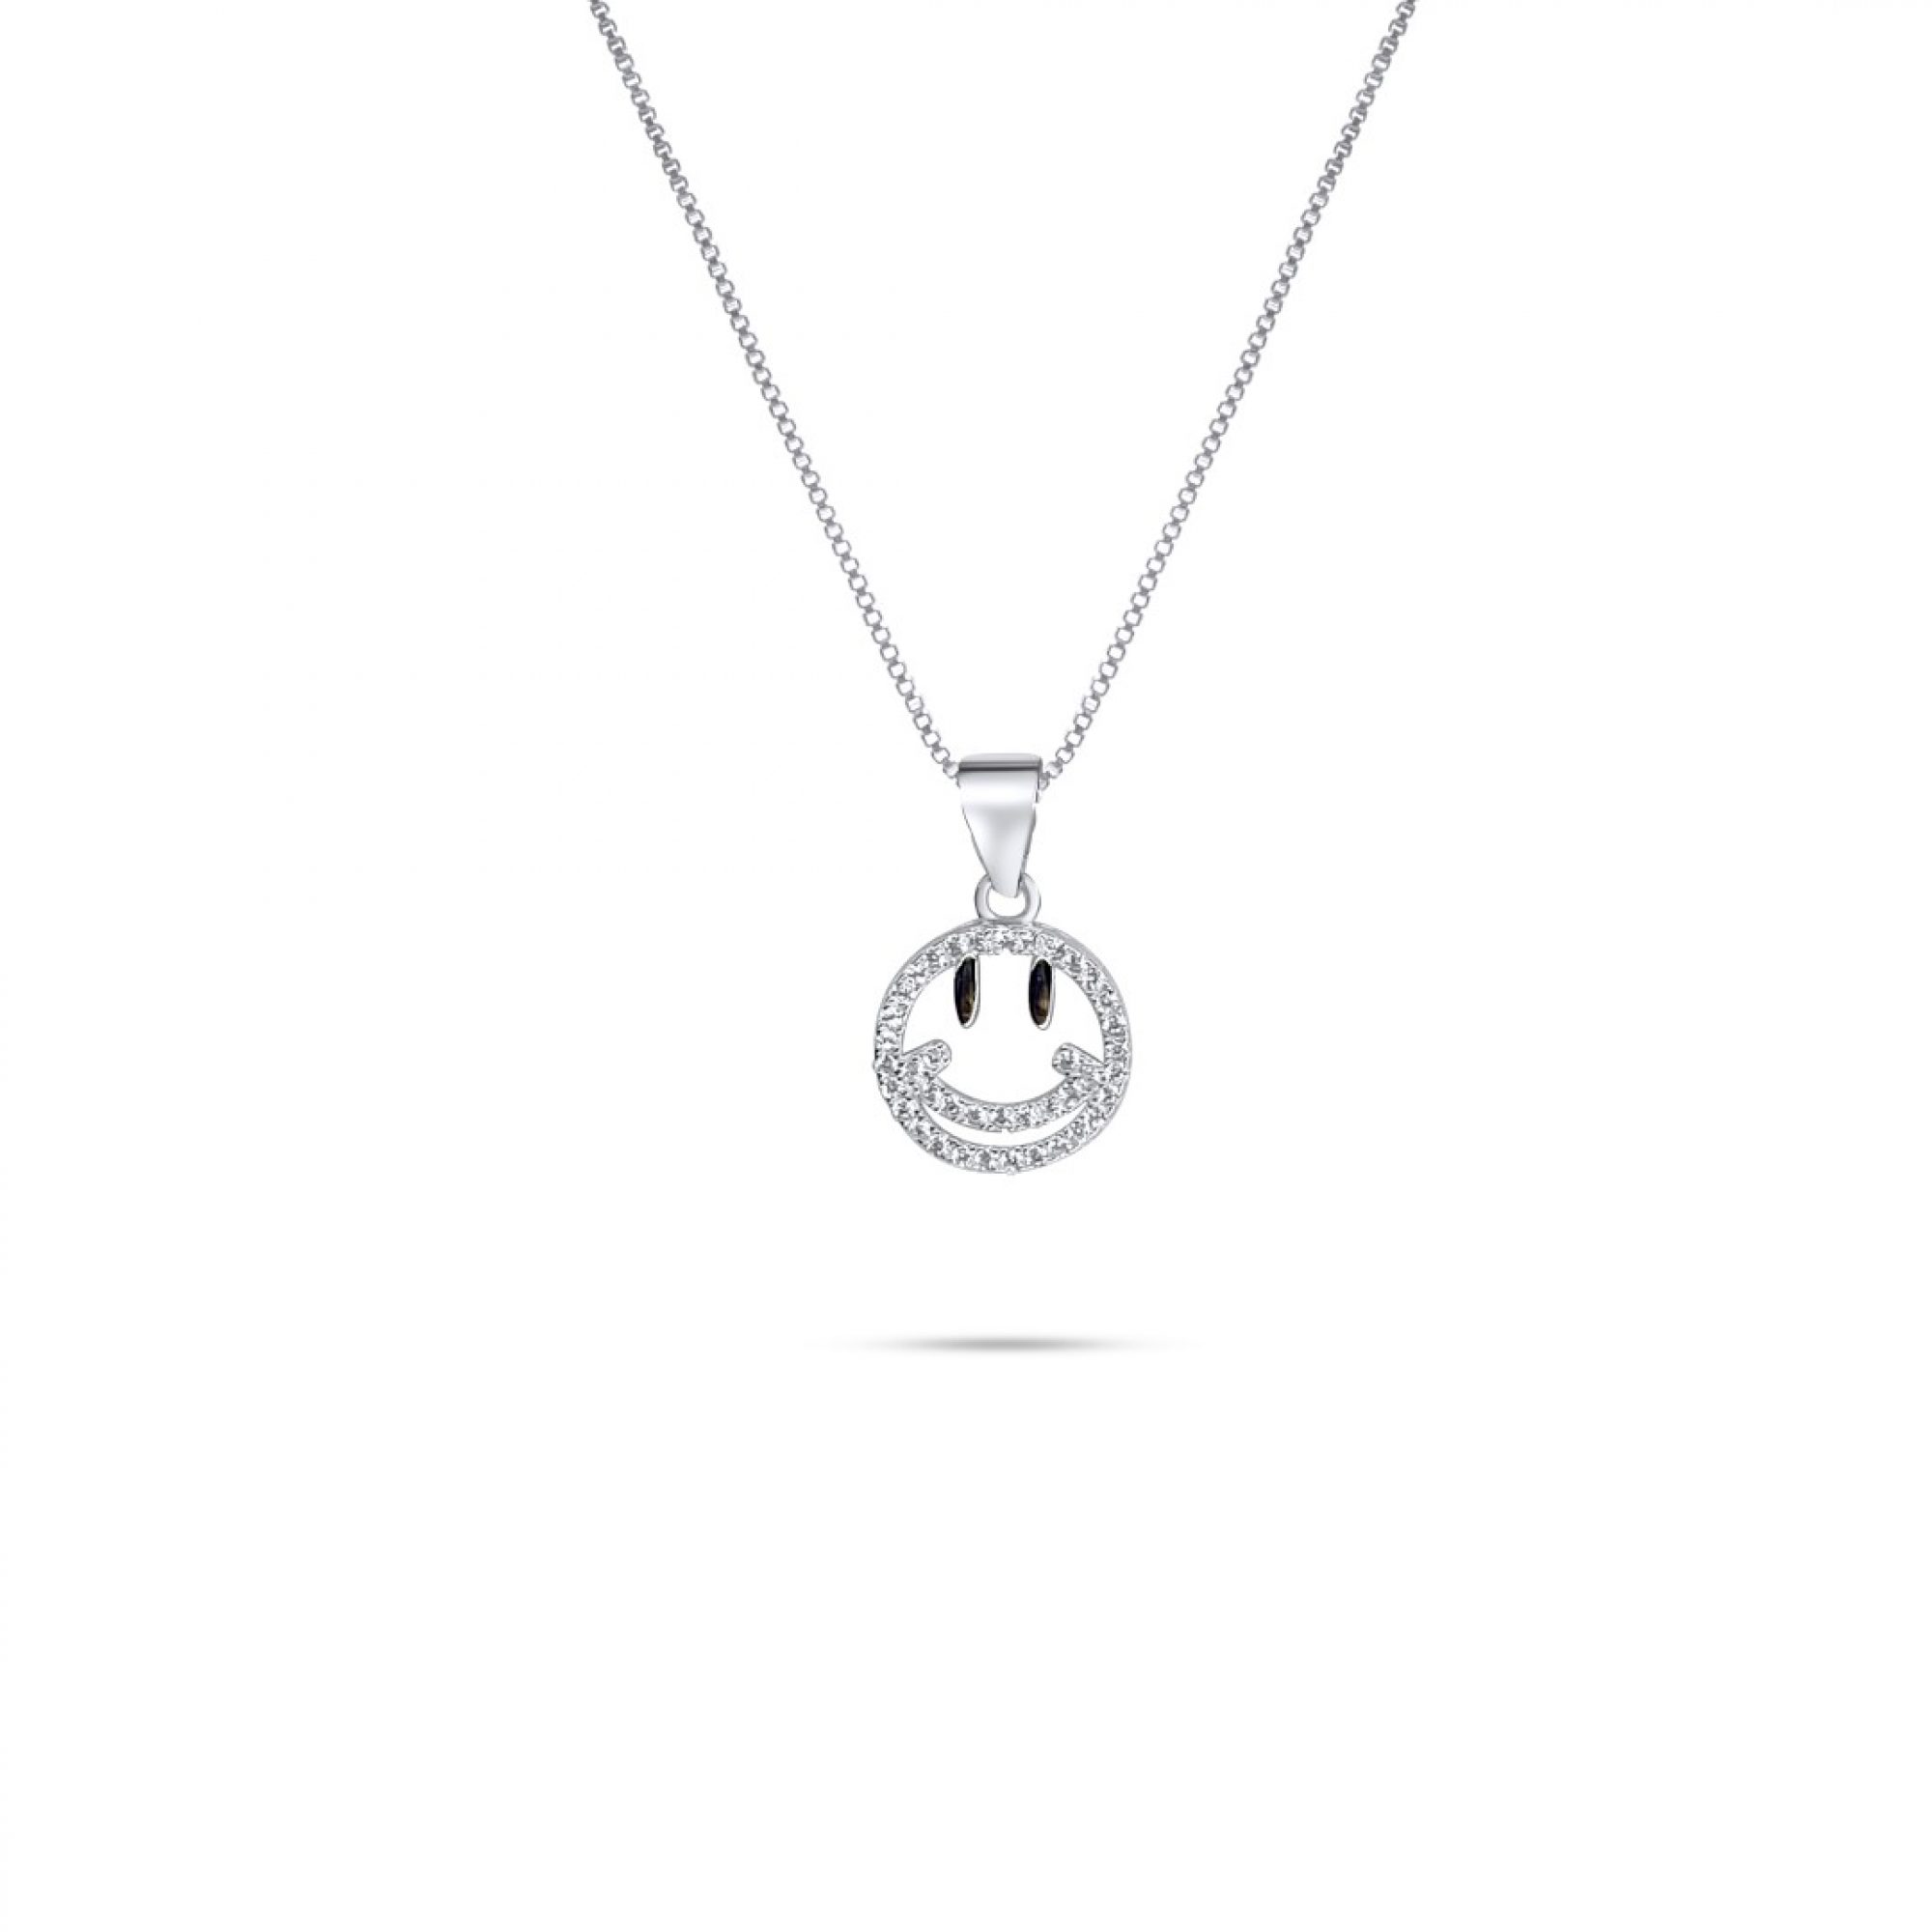 Emoji necklace with zircon stones